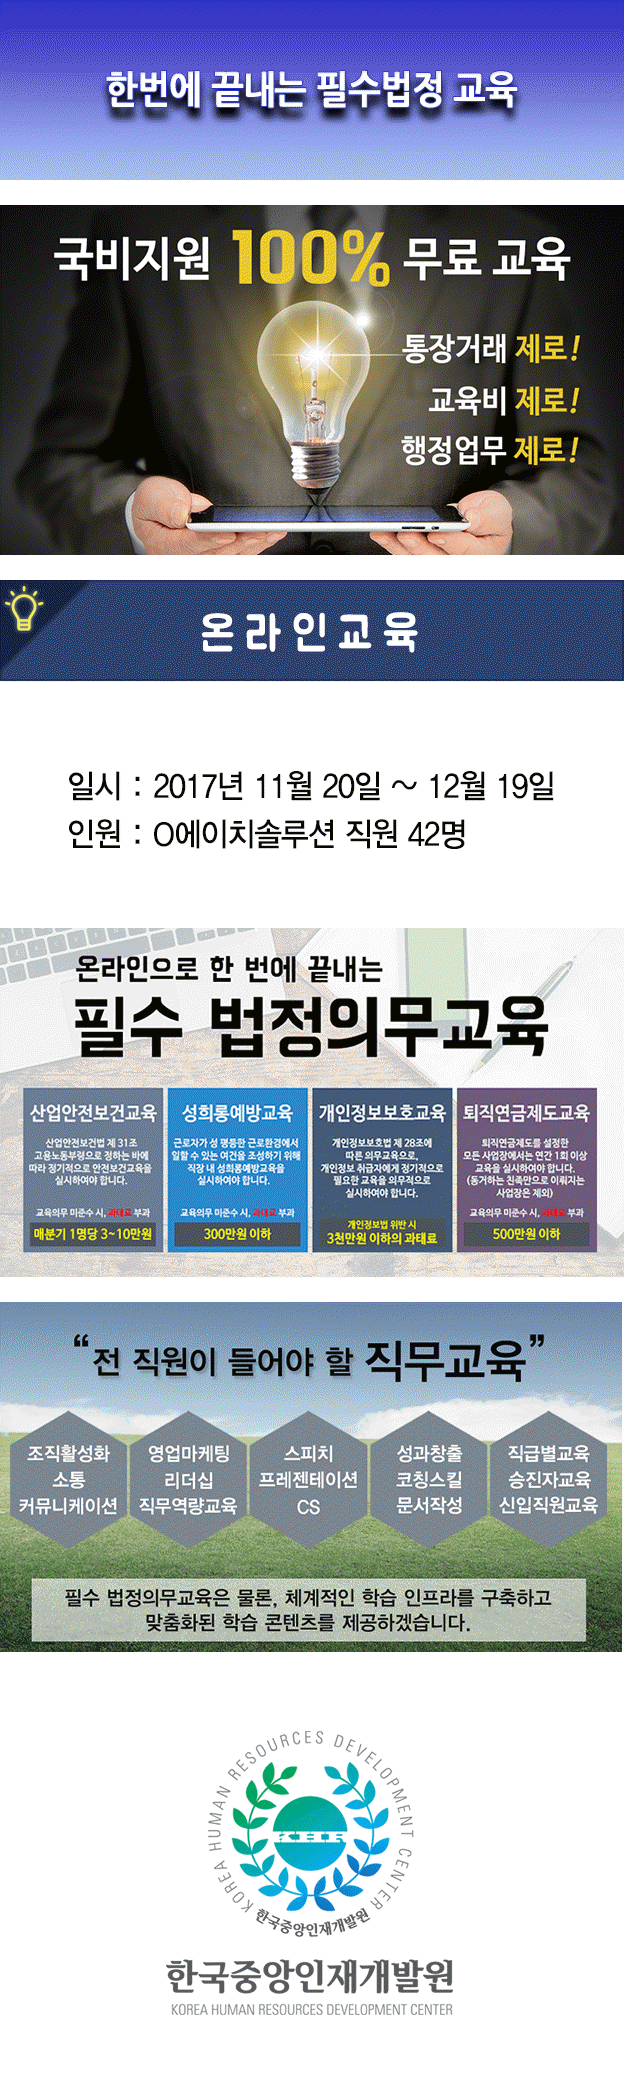 사본 -한국중앙인재개발원 공지사항(온라인) 디에이치솔루션.gif